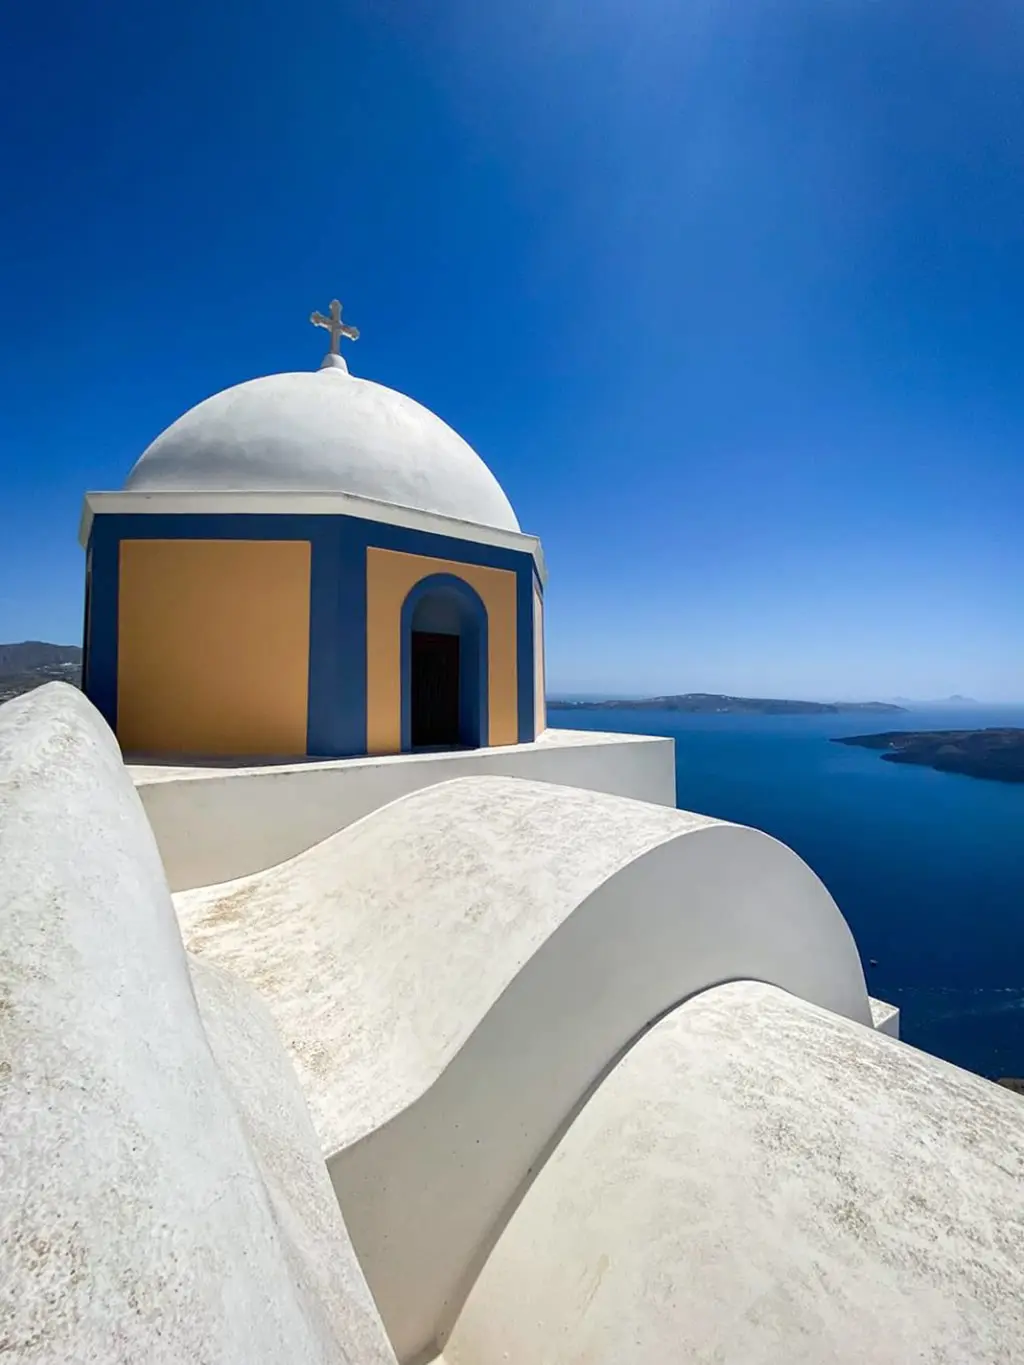 Petite chapelle qui surplombe la mer sur l'île de Santorin en Grèce.